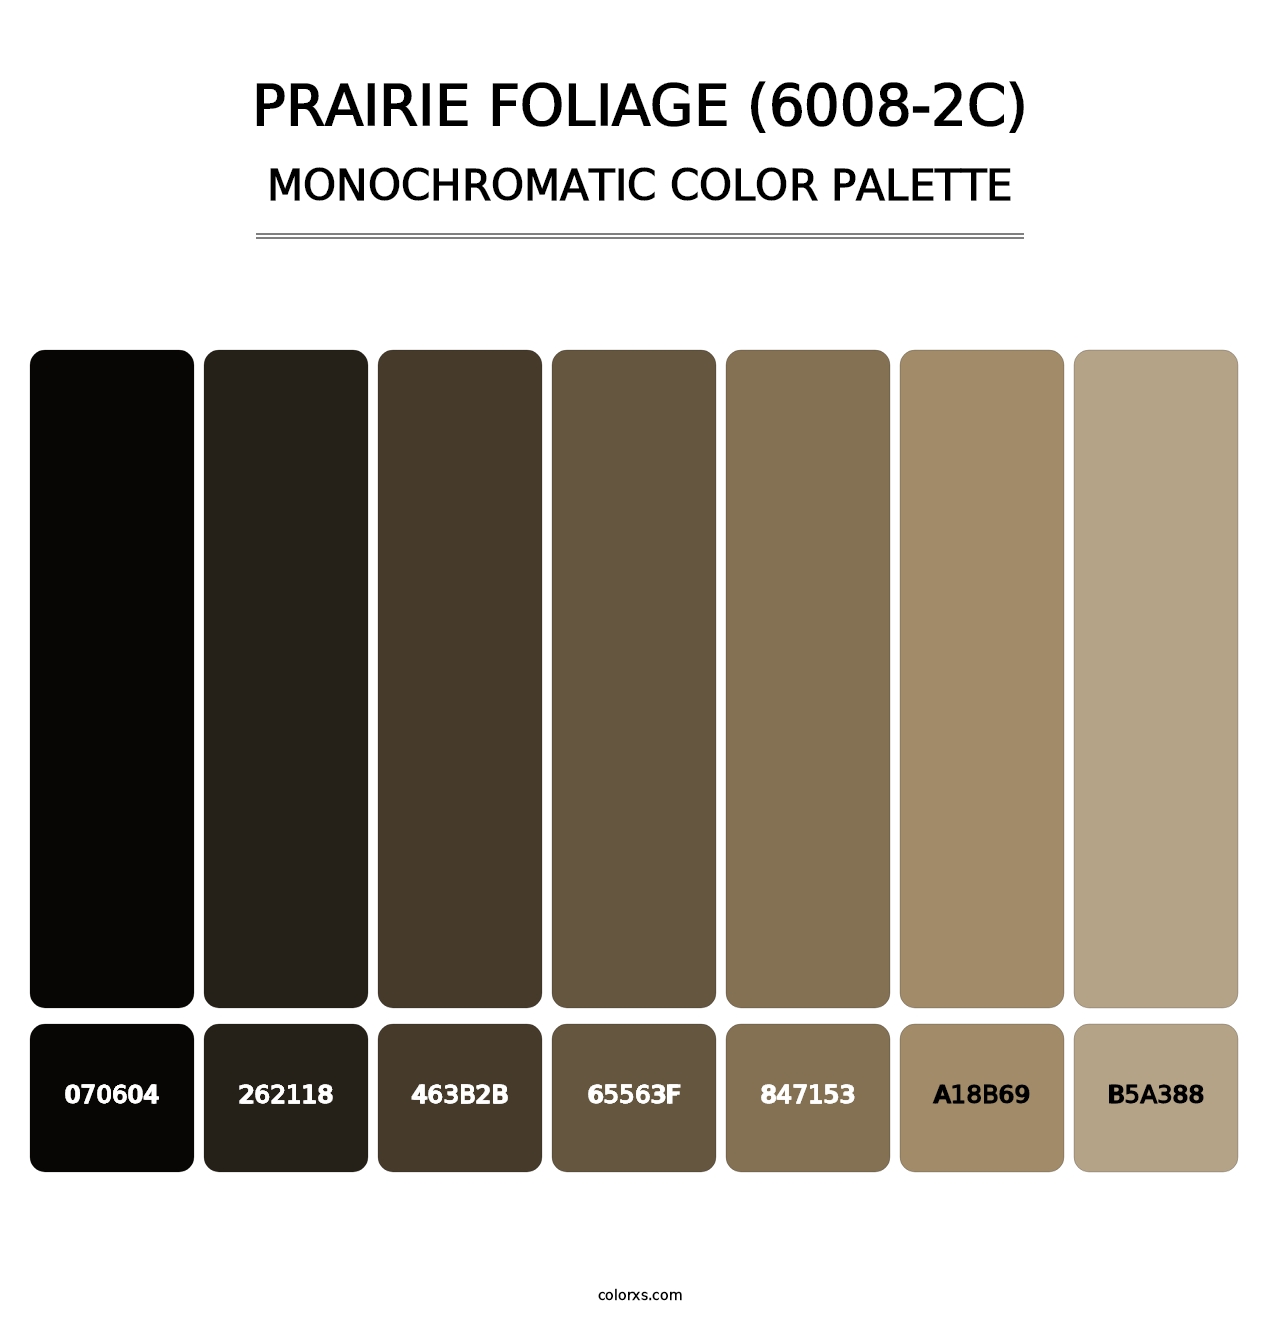 Prairie Foliage (6008-2C) - Monochromatic Color Palette